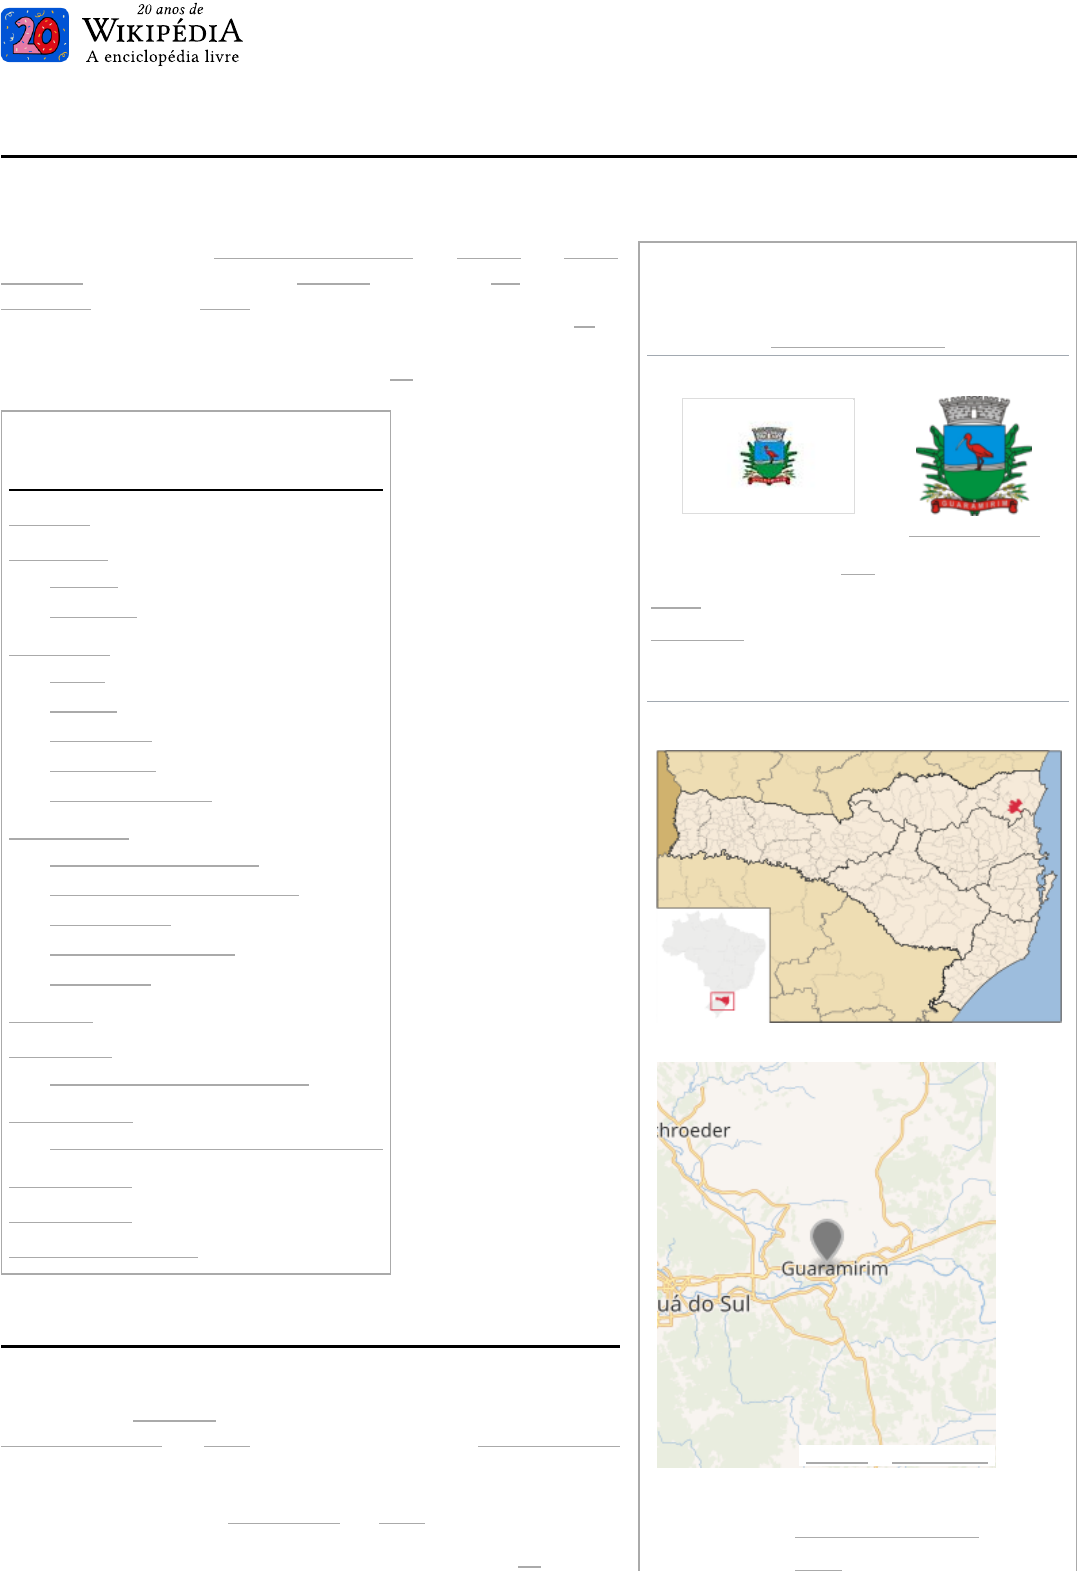 Geografia de Portugal – Wikipédia, a enciclopédia livre